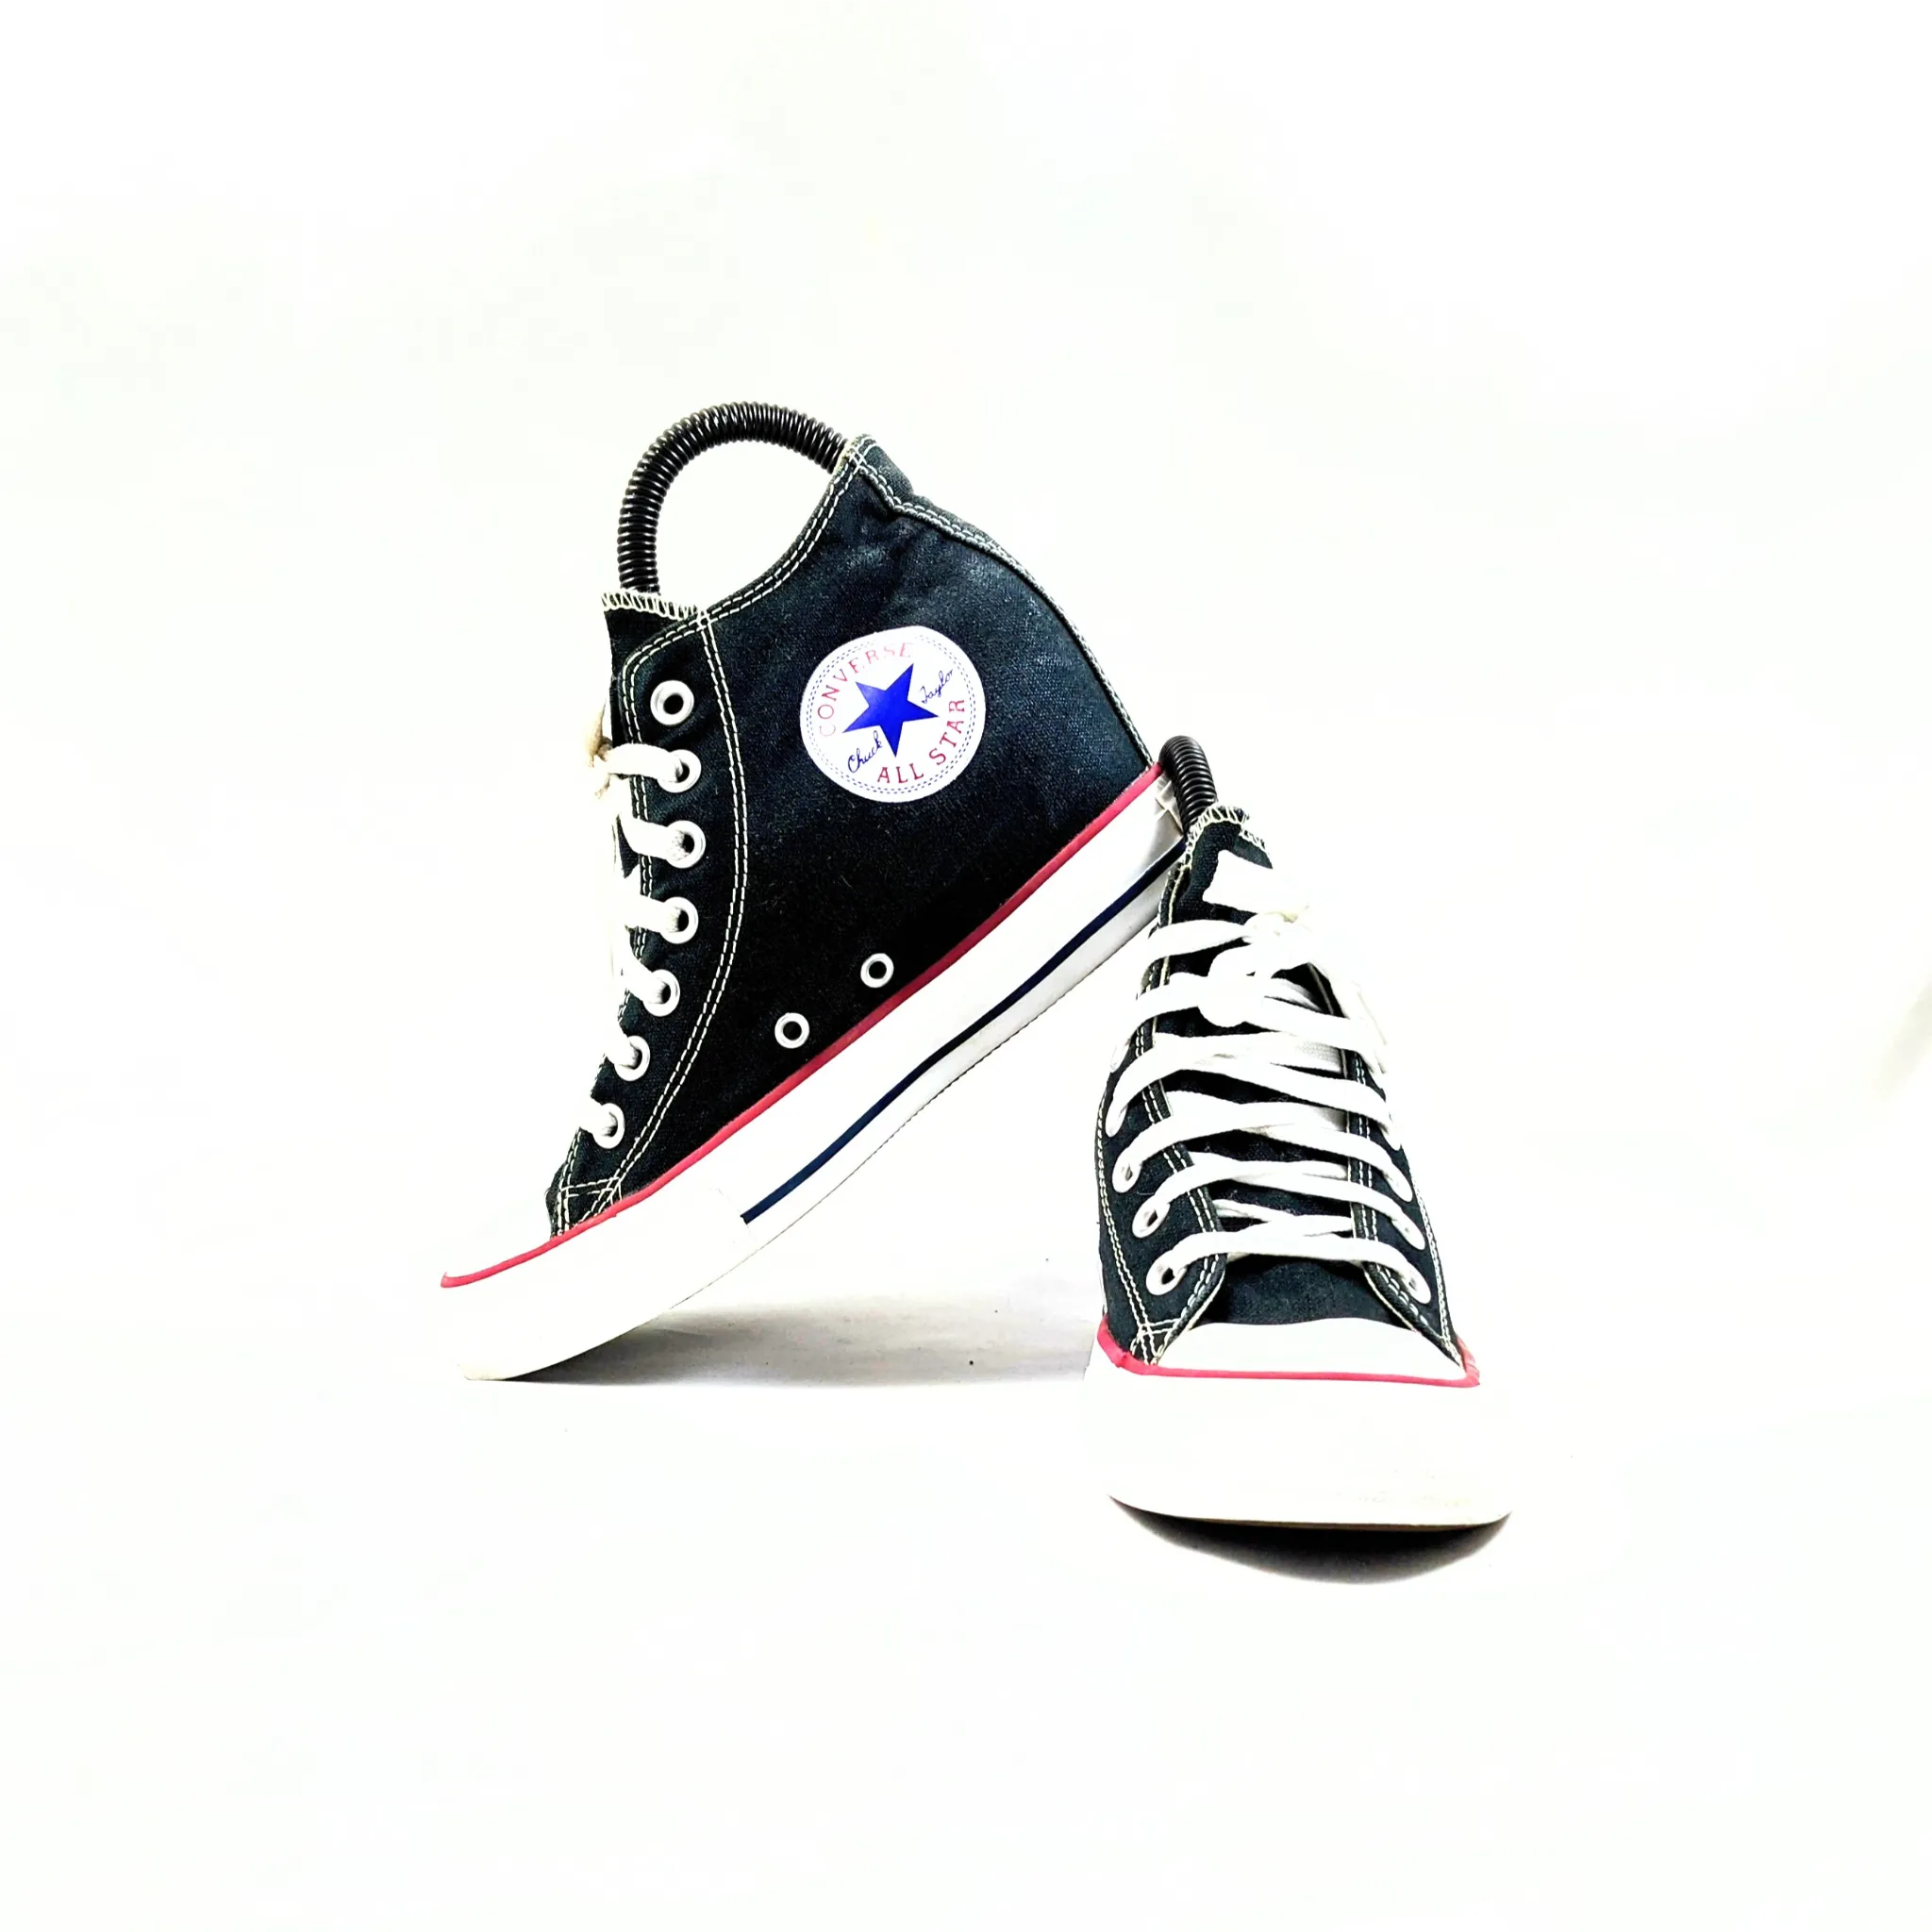 Converse Heel Sneakers Premium C